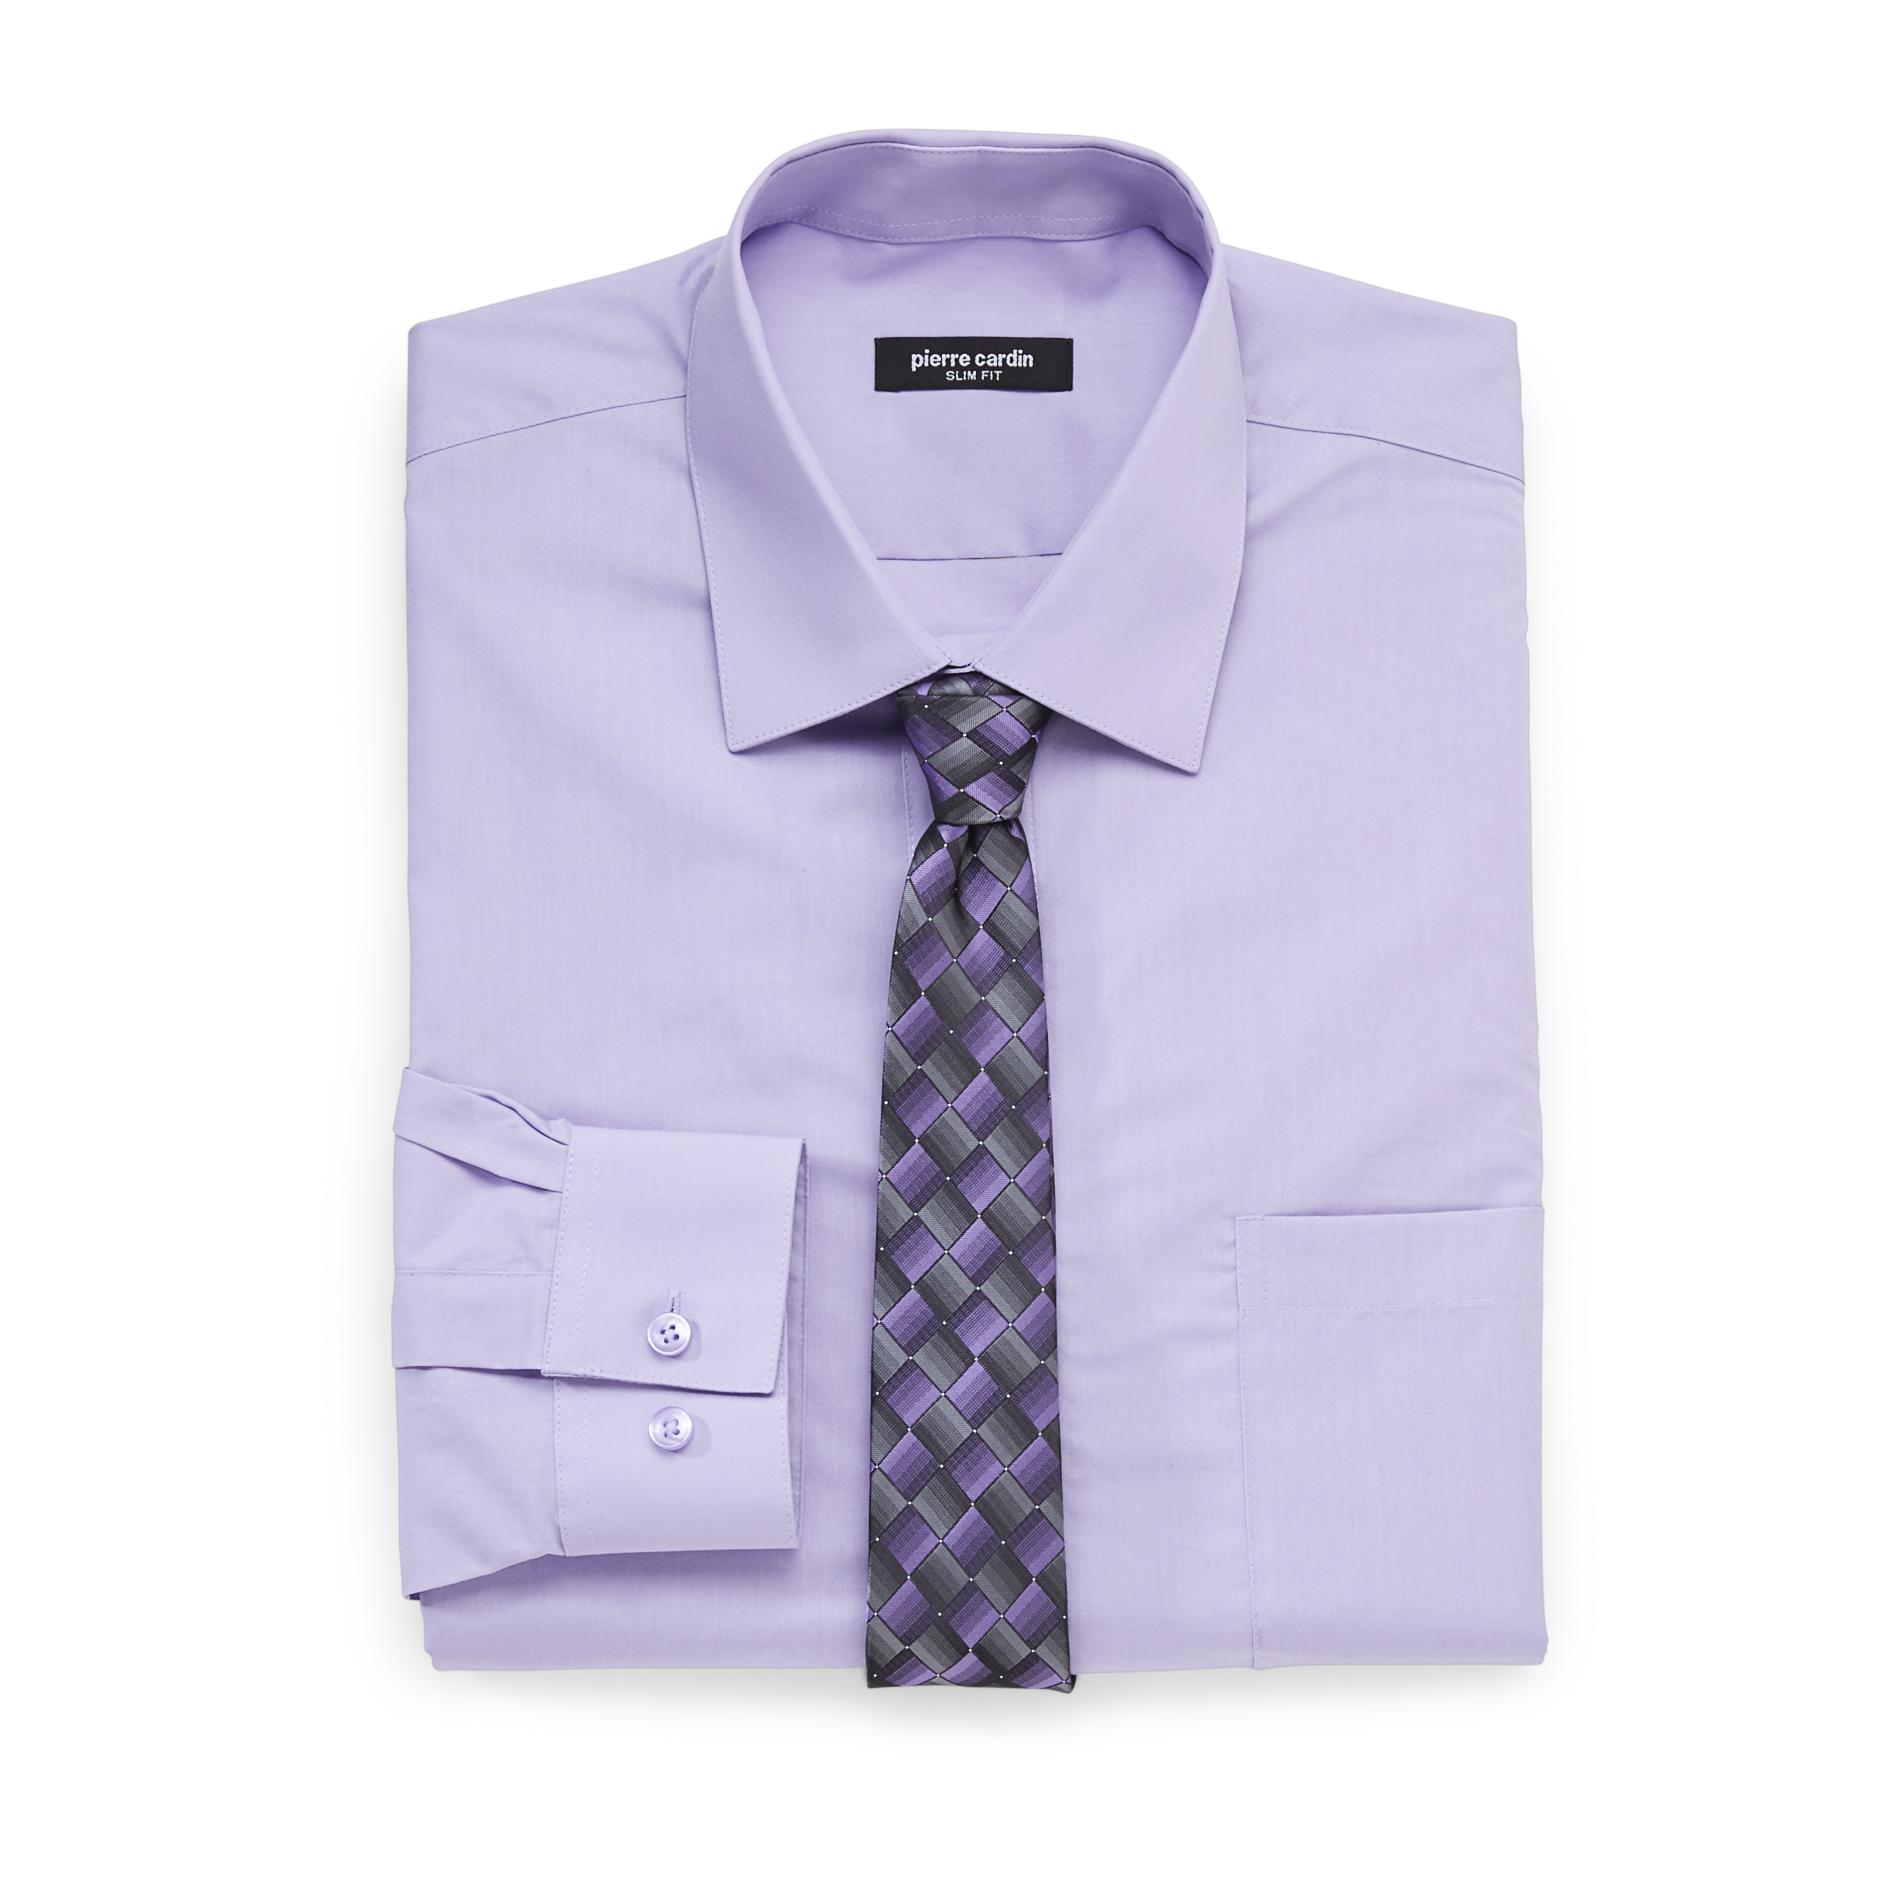 Pierre Cardin Men's Slim Fit Shirt & Tie - Checkered